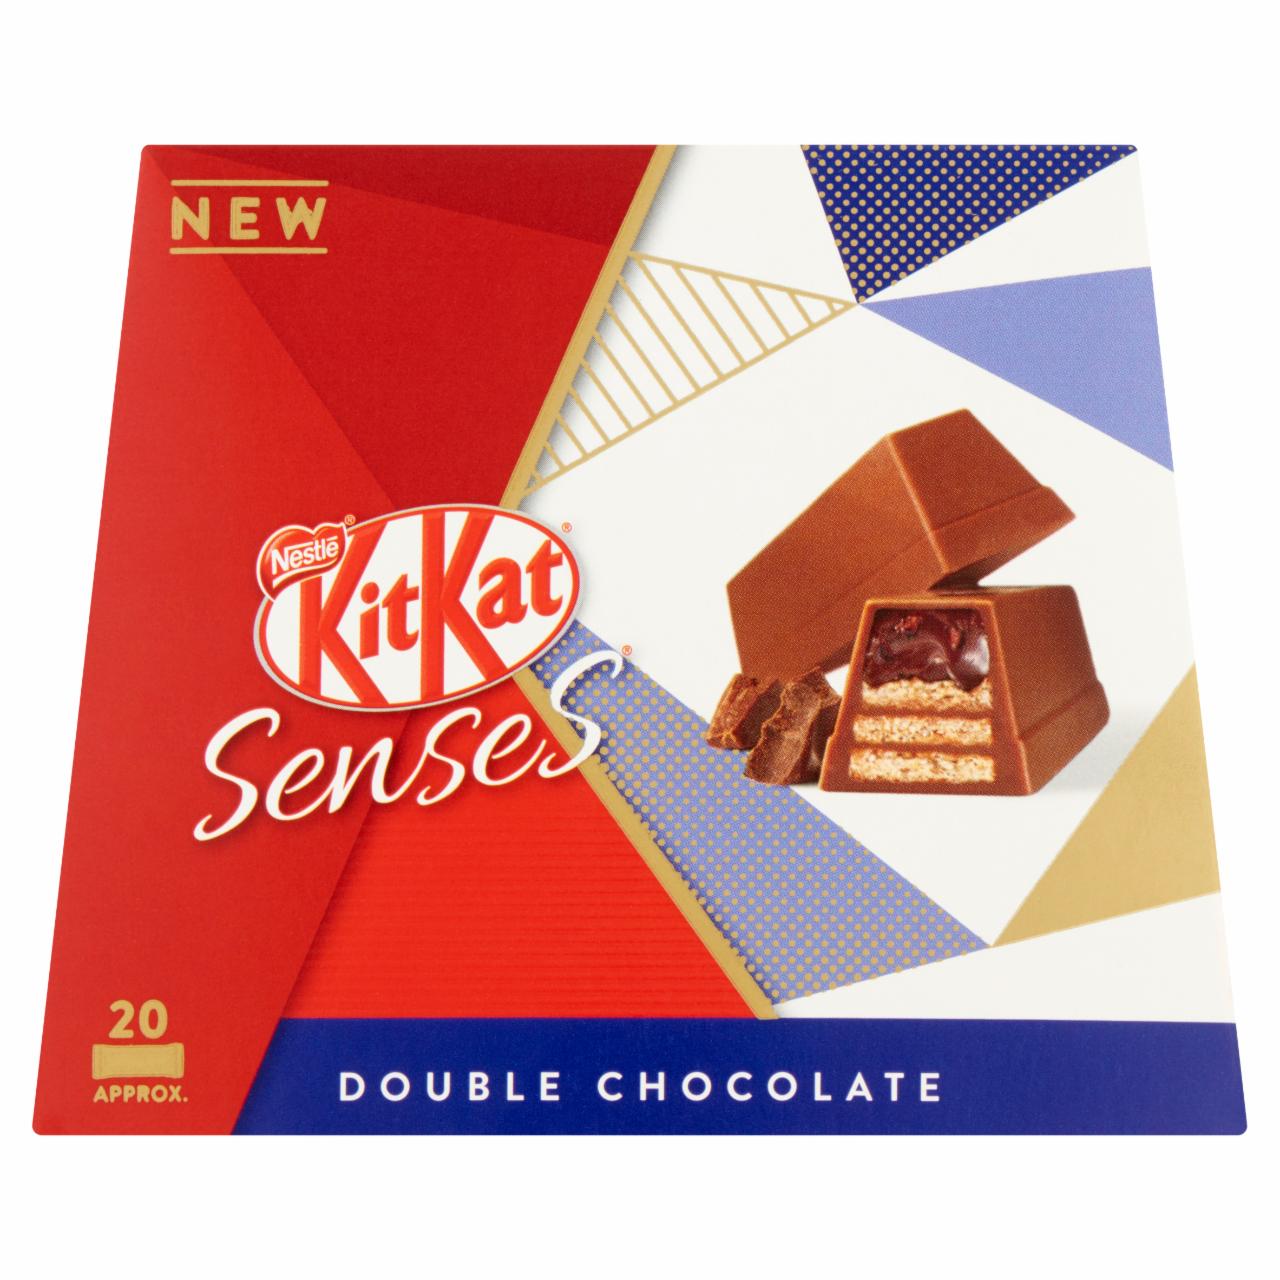 Képek - KitKat Senses ropogós ostya csokoládékrémmel bevonva, tejcsokoládéban 200 g